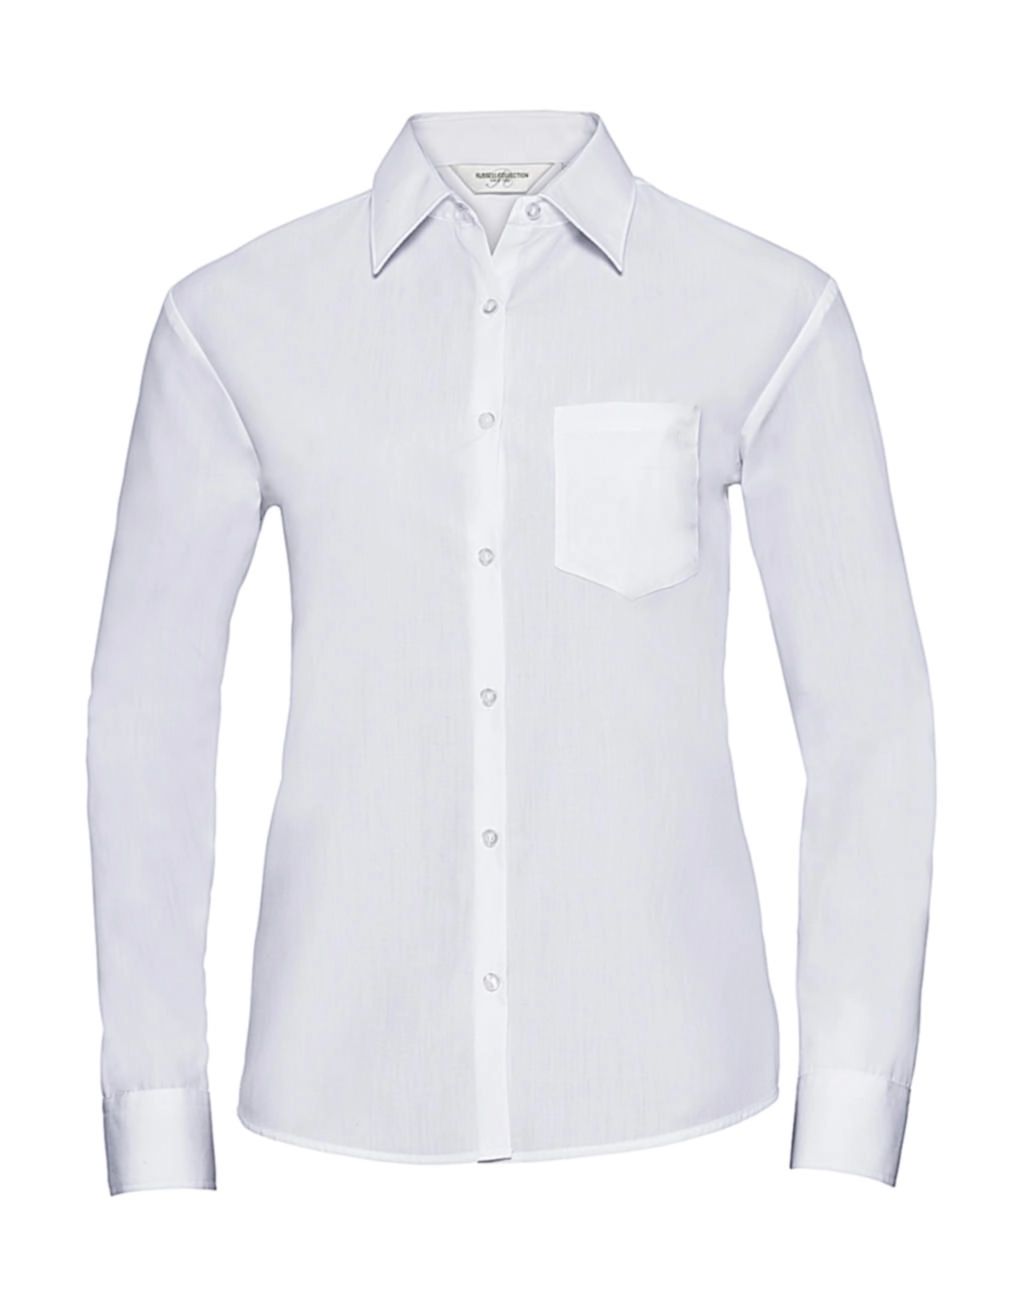 Ladies` LS Poplin Shirt zum Besticken und Bedrucken in der Farbe White mit Ihren Logo, Schriftzug oder Motiv.